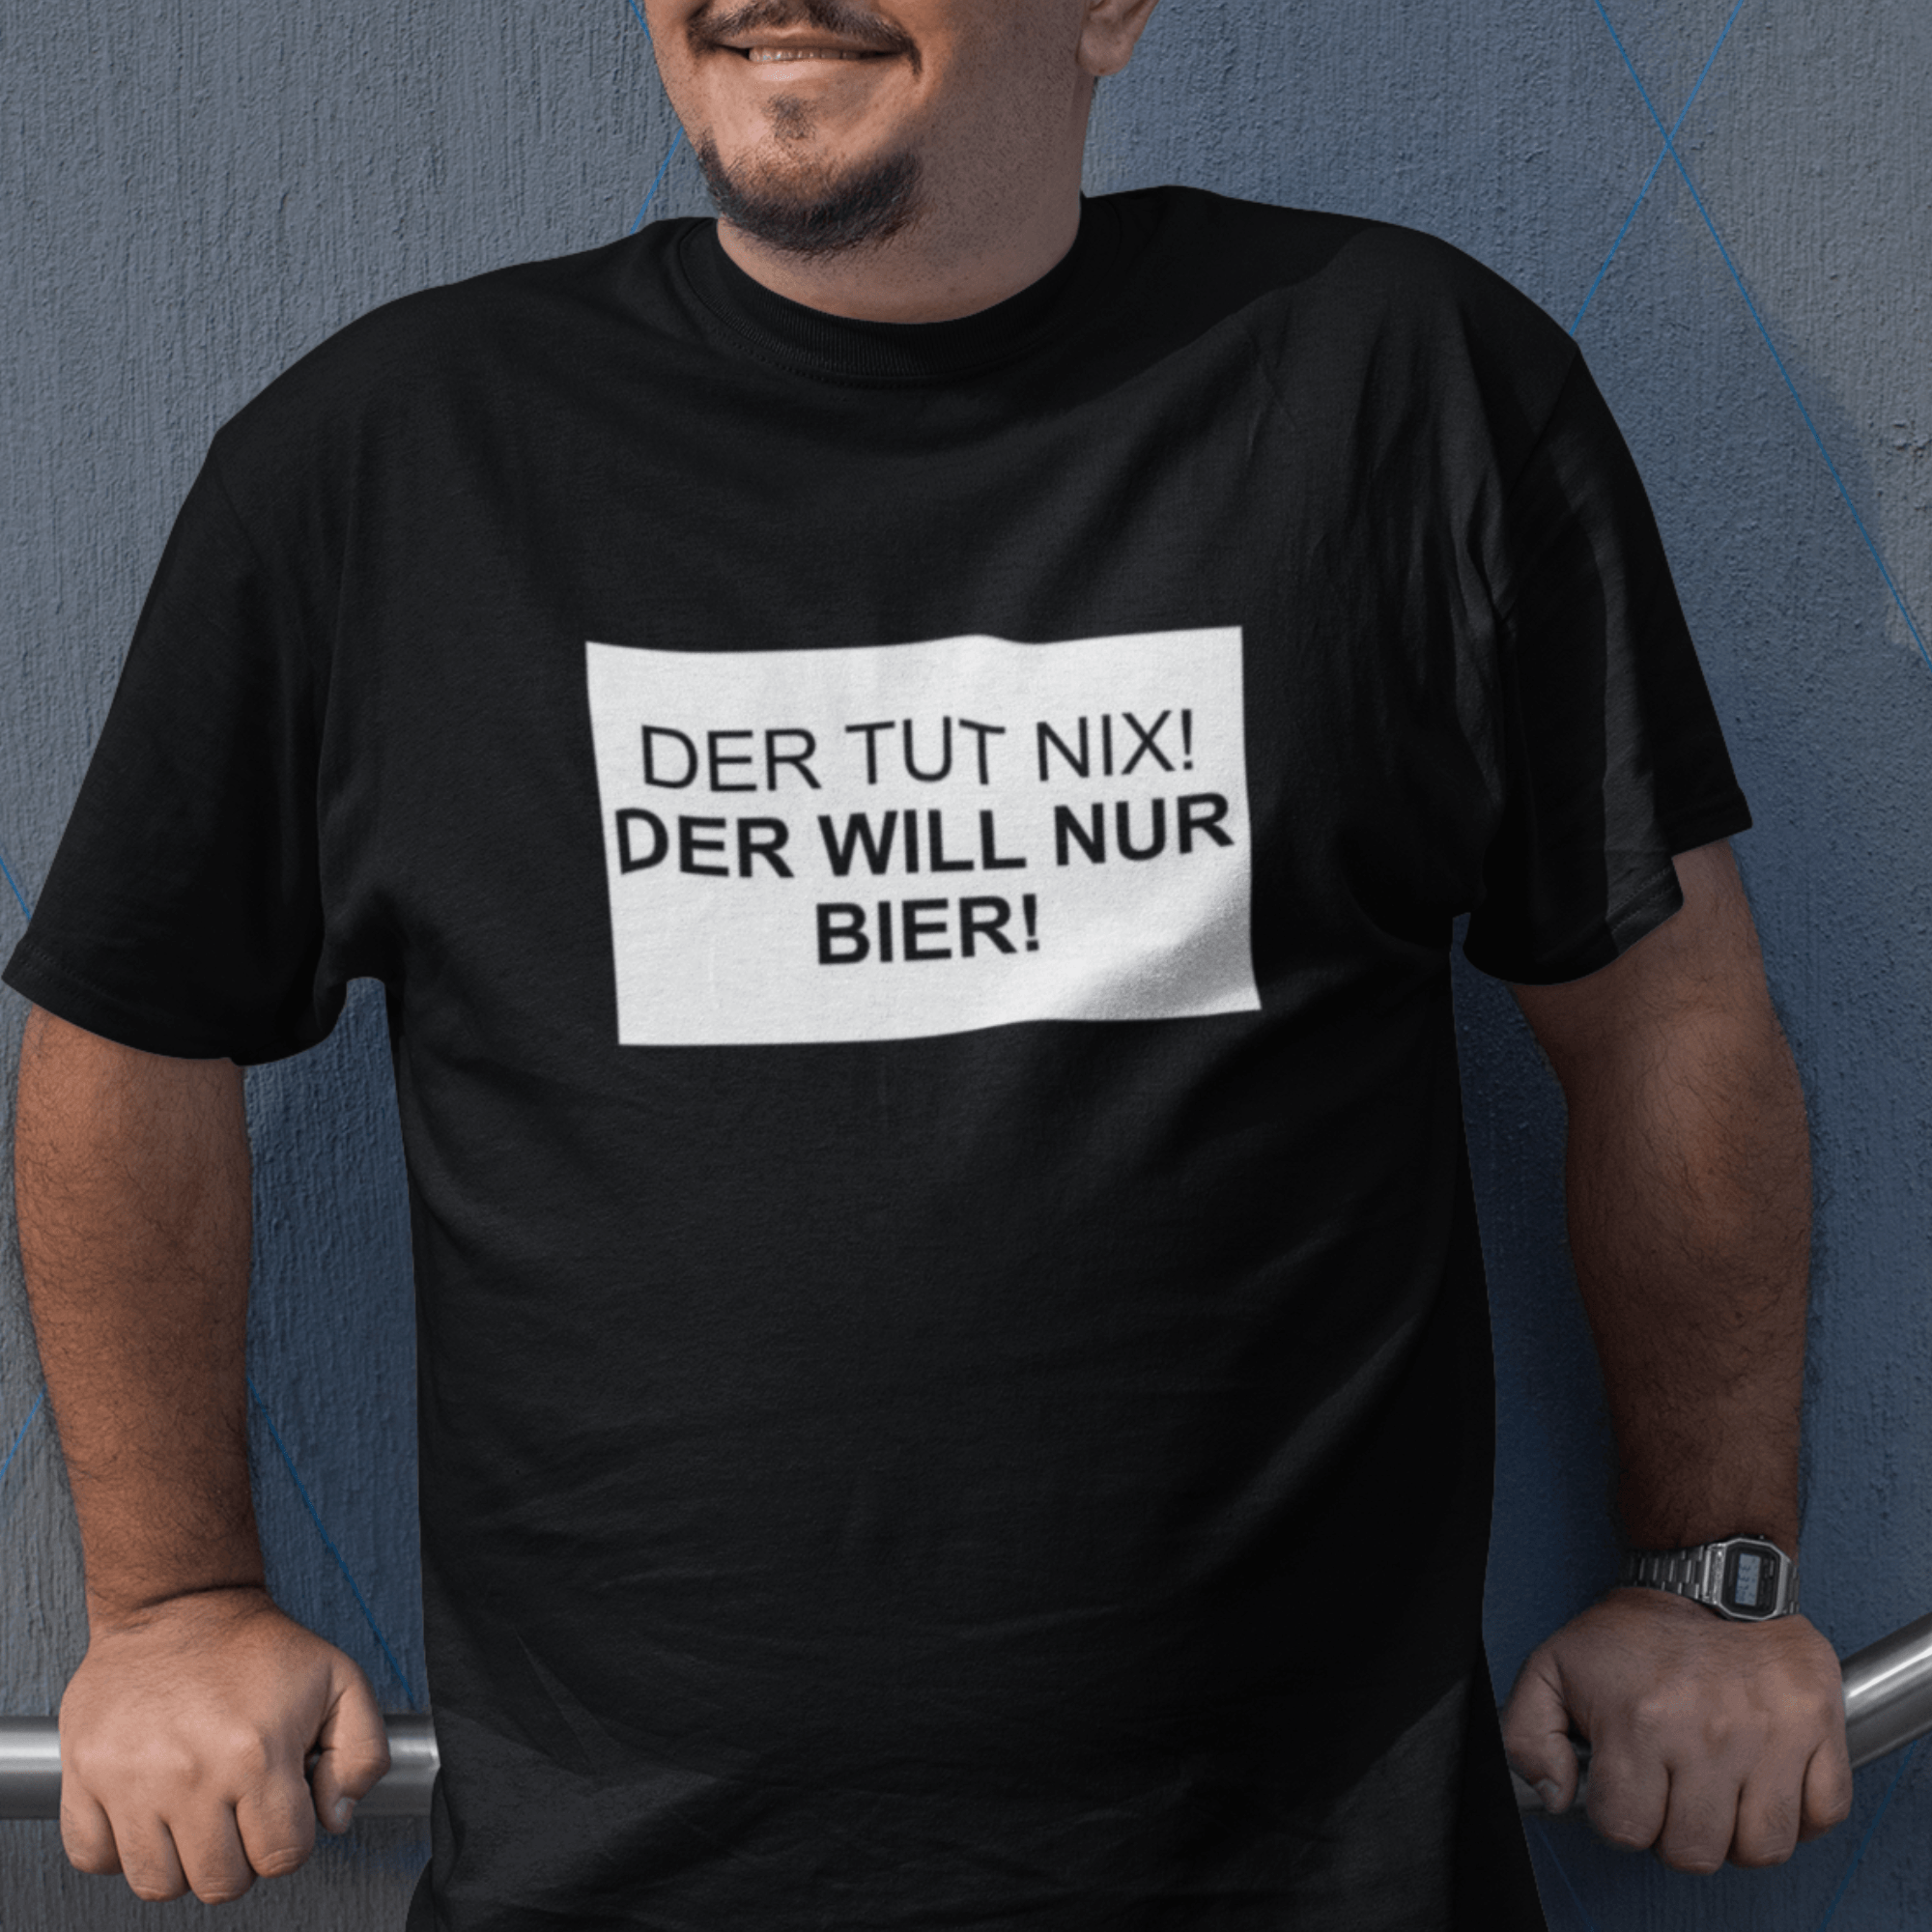 DER TUT NIX! BIER  - Herren Shirt